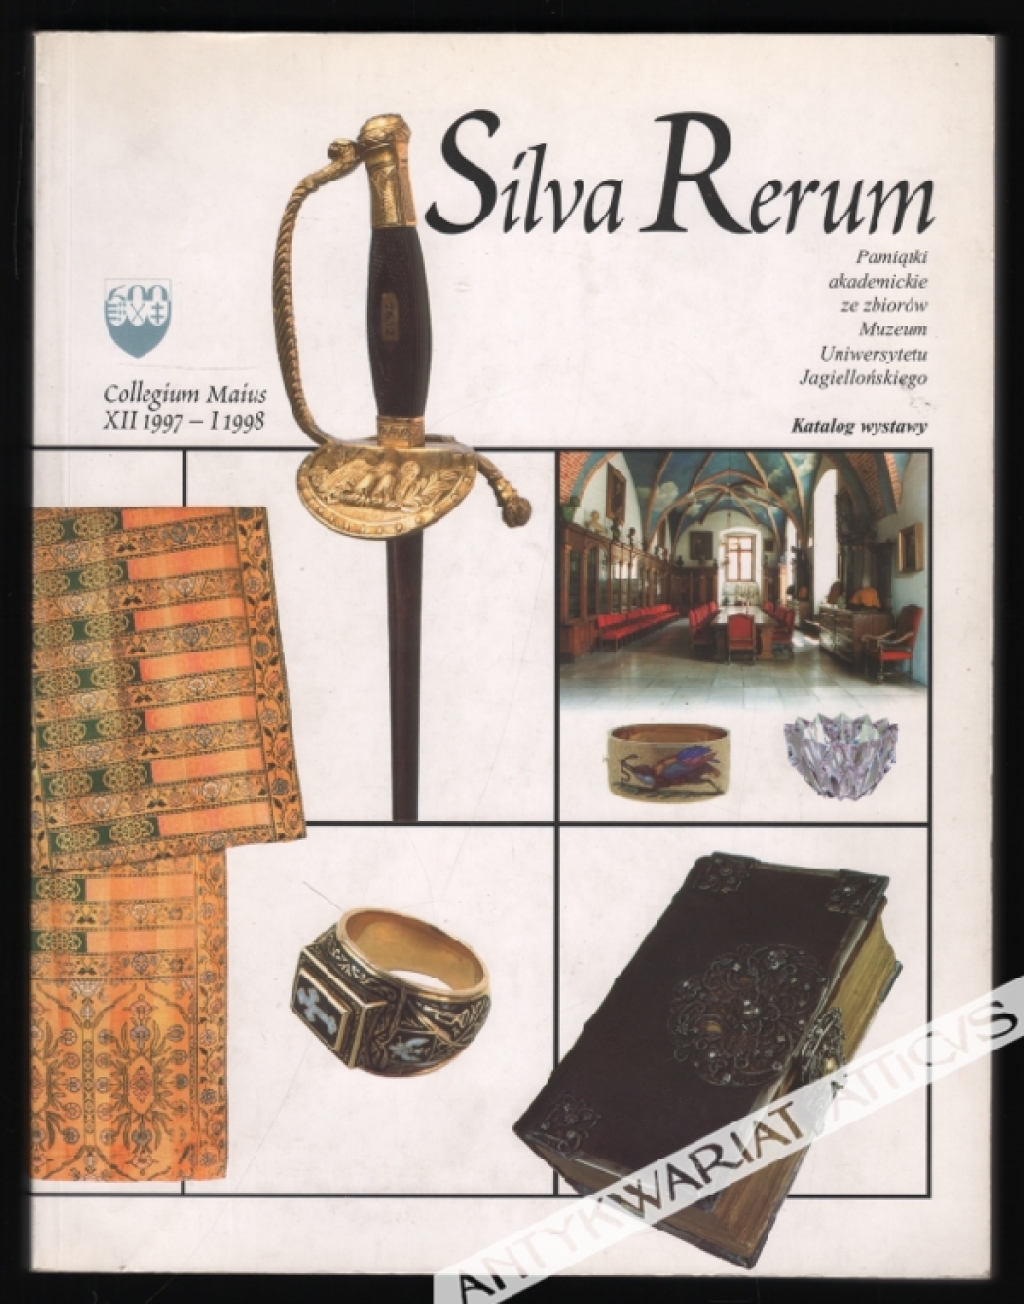 Silva Rerum. Pamiątki akademickie ze zbiorów Muzeum Uniwersytetu Jagiellońskiego. Katalog wystawy, Collegium Maius XII 1997-1998